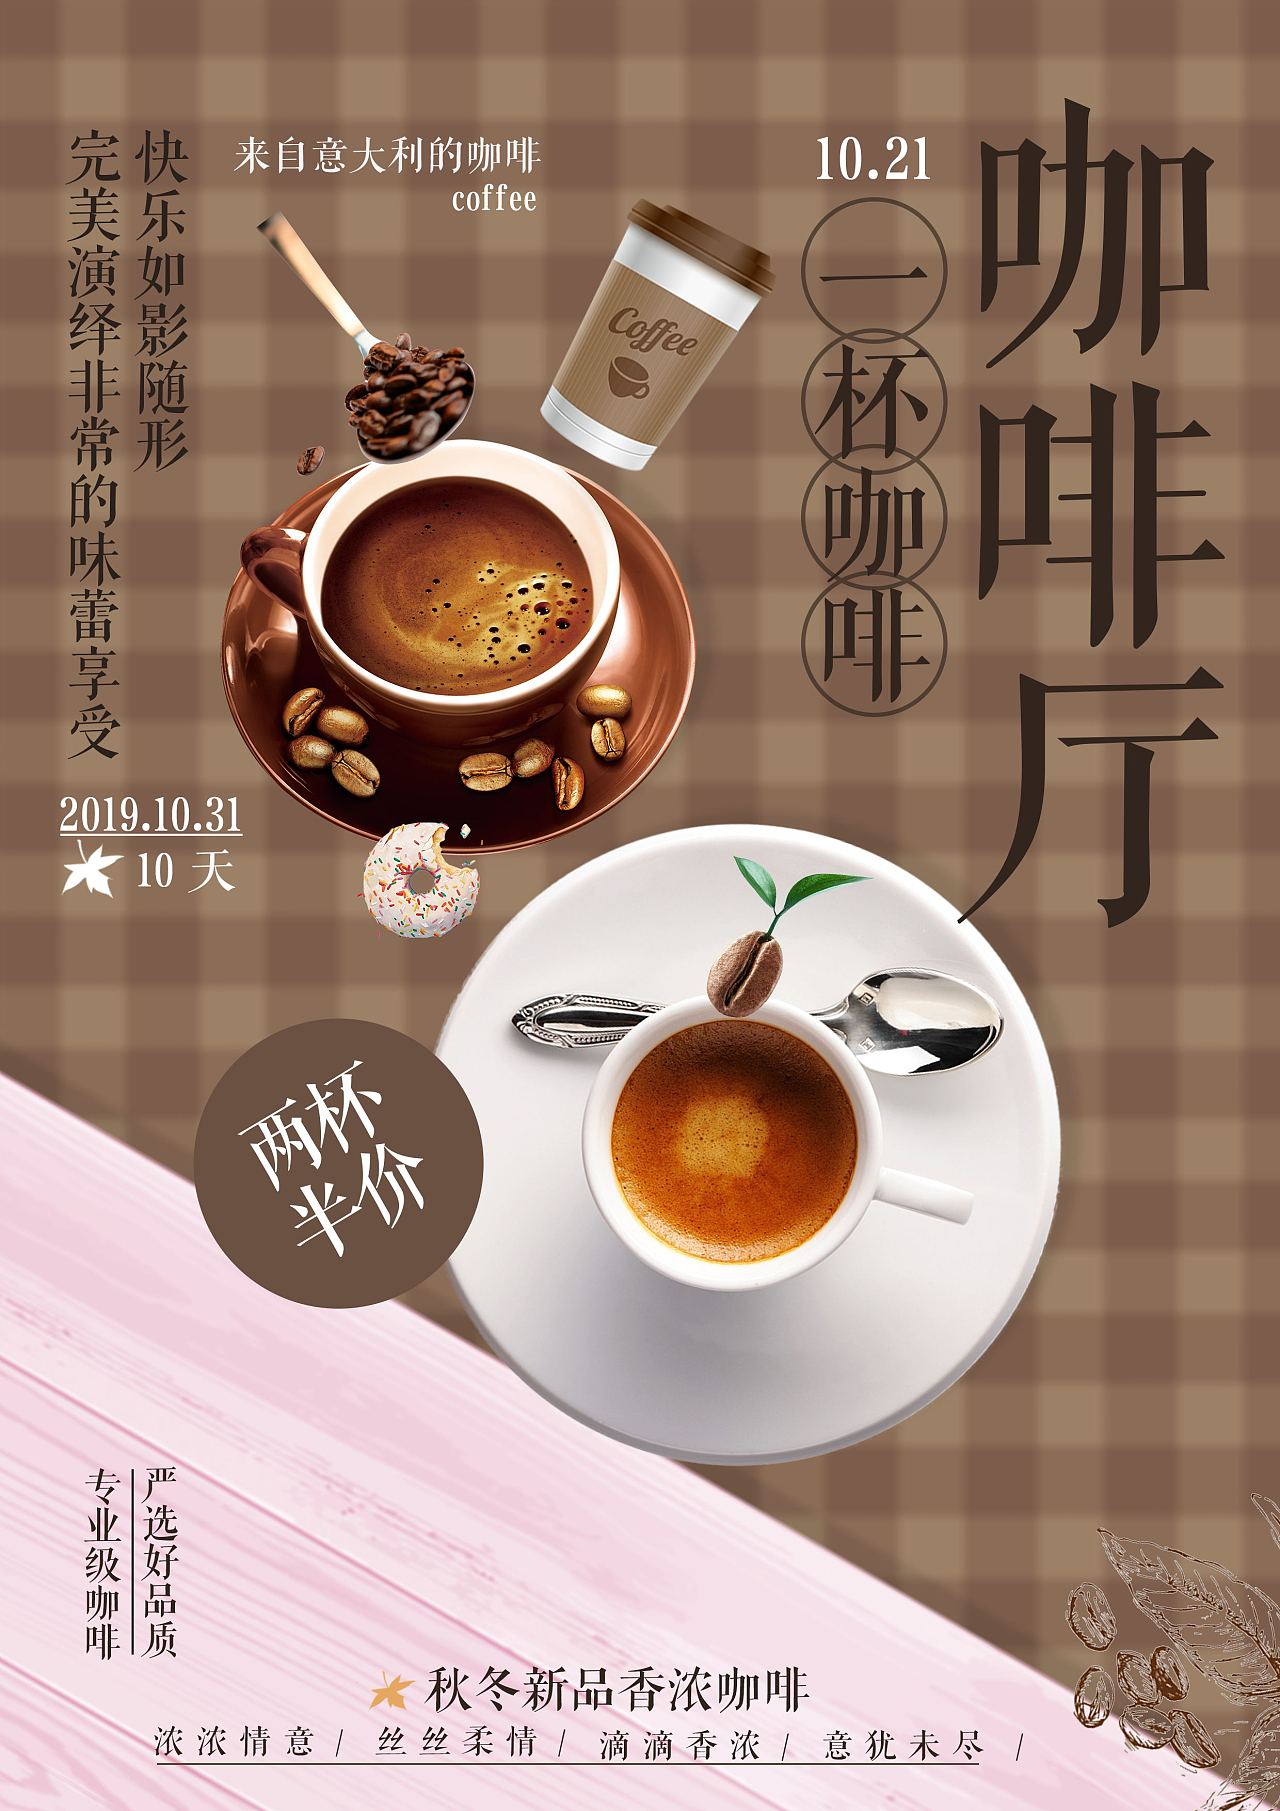 红糖咖啡与空白记事本47798_美食文化_美食类_图库壁纸_68Design